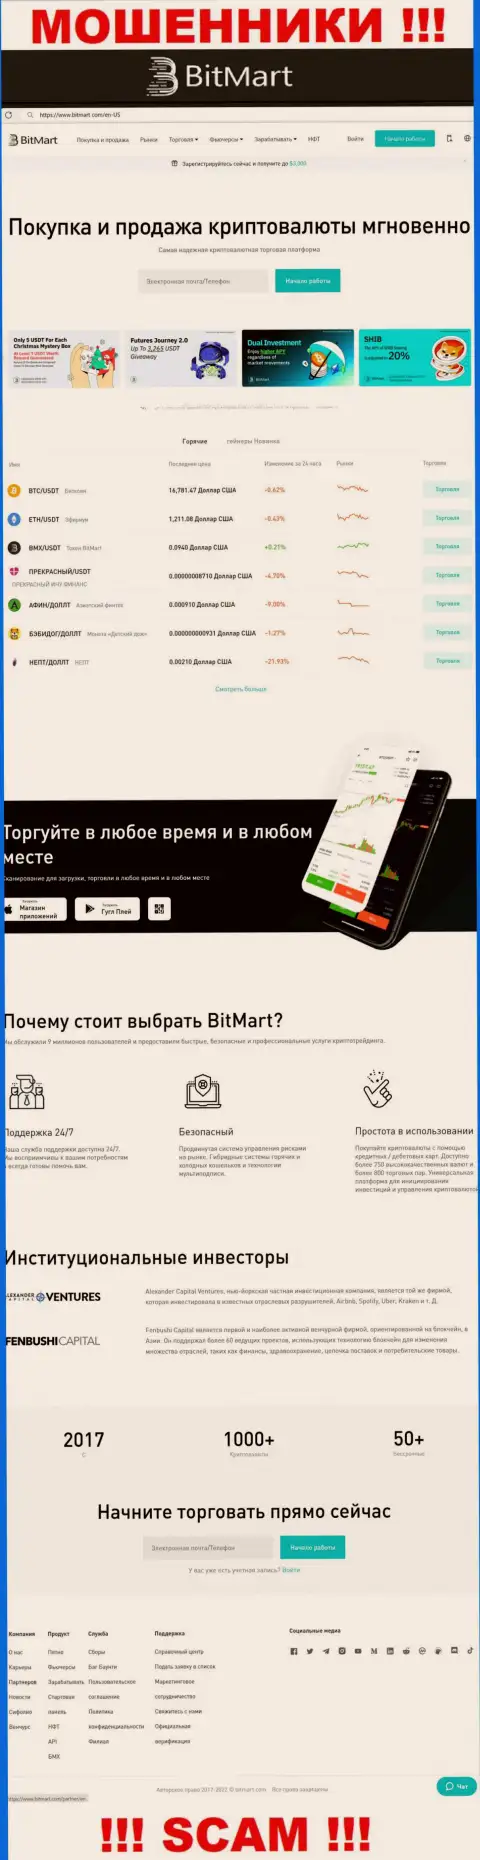 Внешний вид официального сайта противоправно действующей конторы BitMart